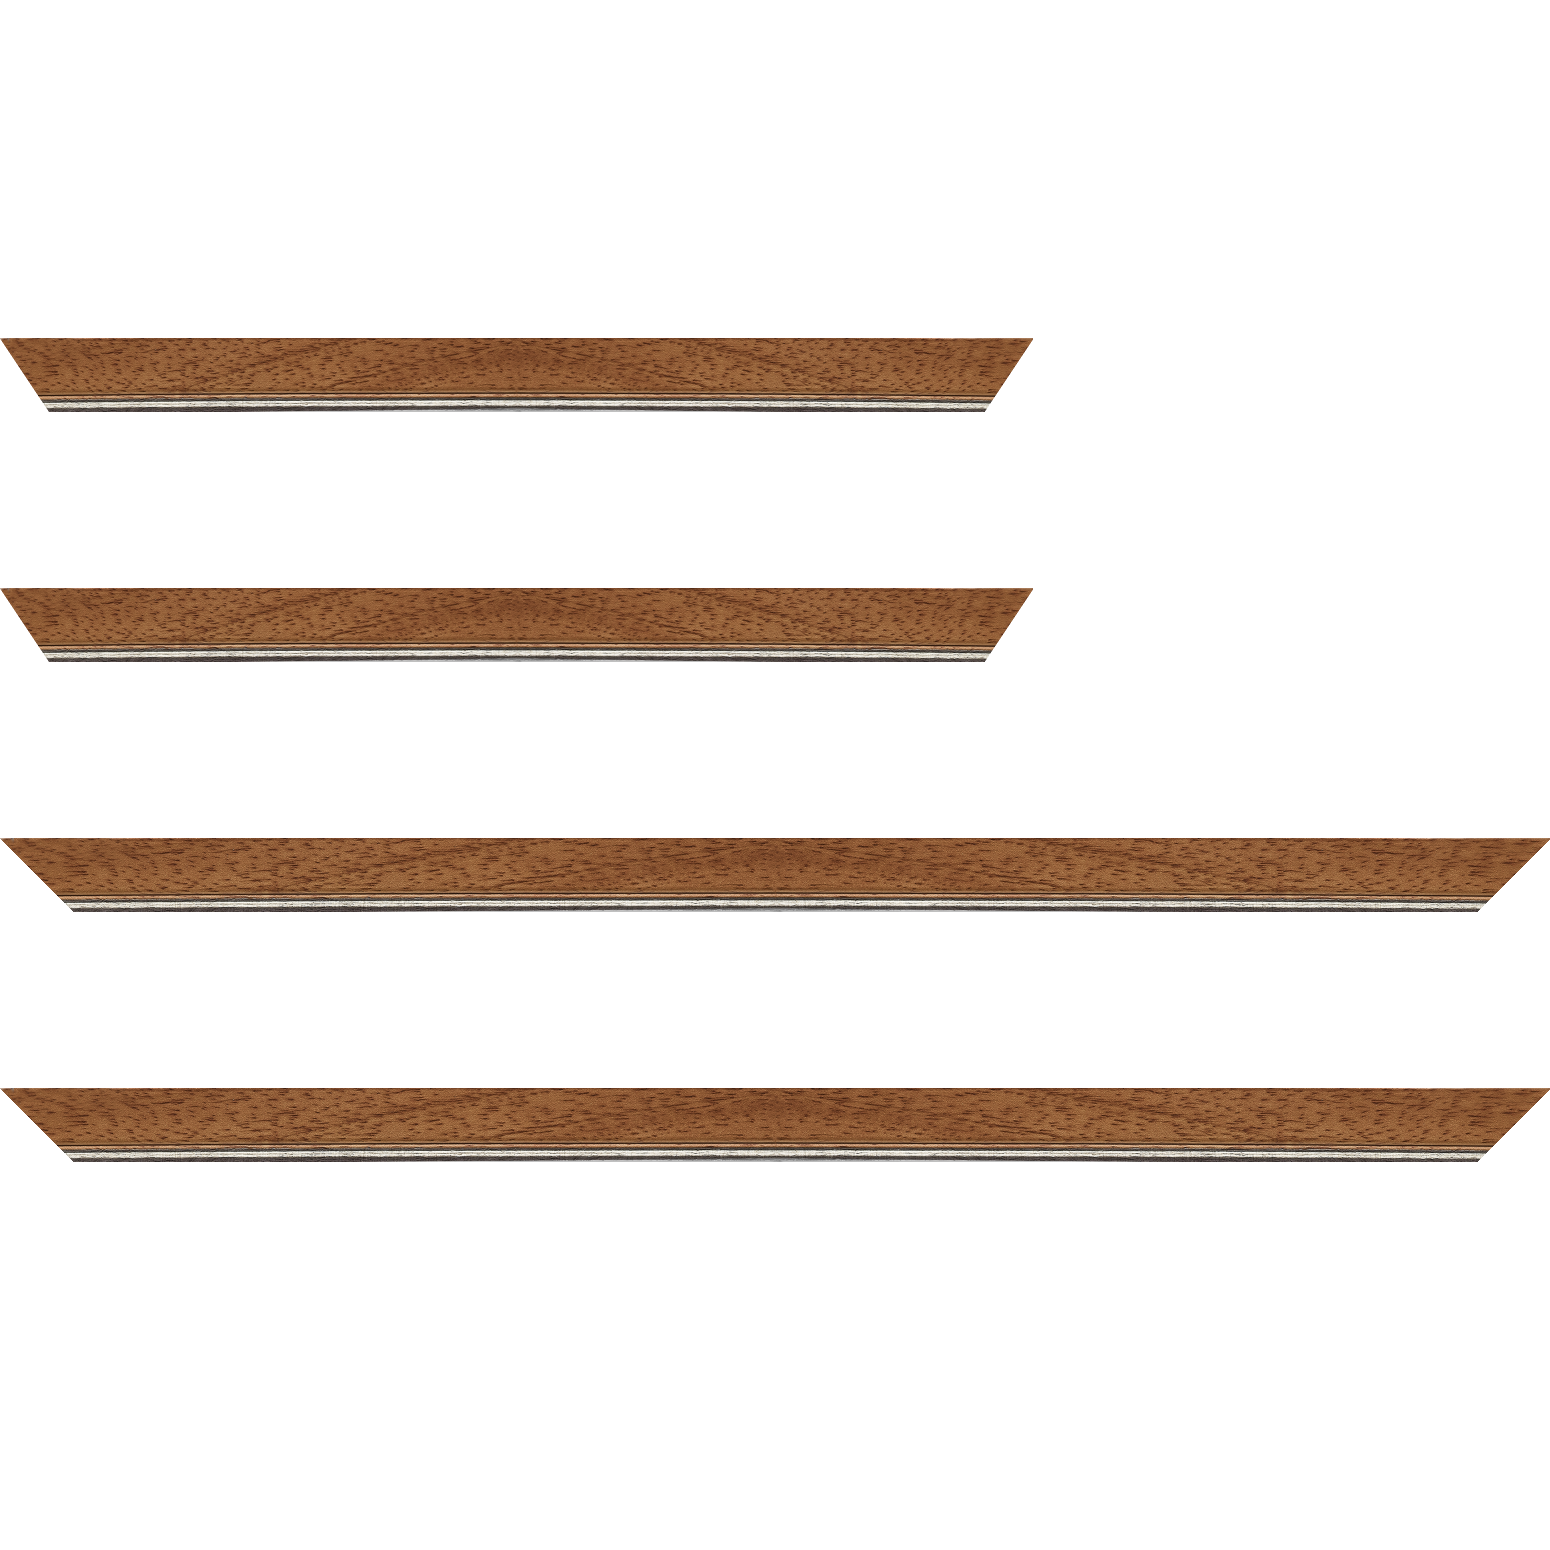 Baguette bois profil plat largeur 2.5cm couleur marron ton bois filet argent - 30x90